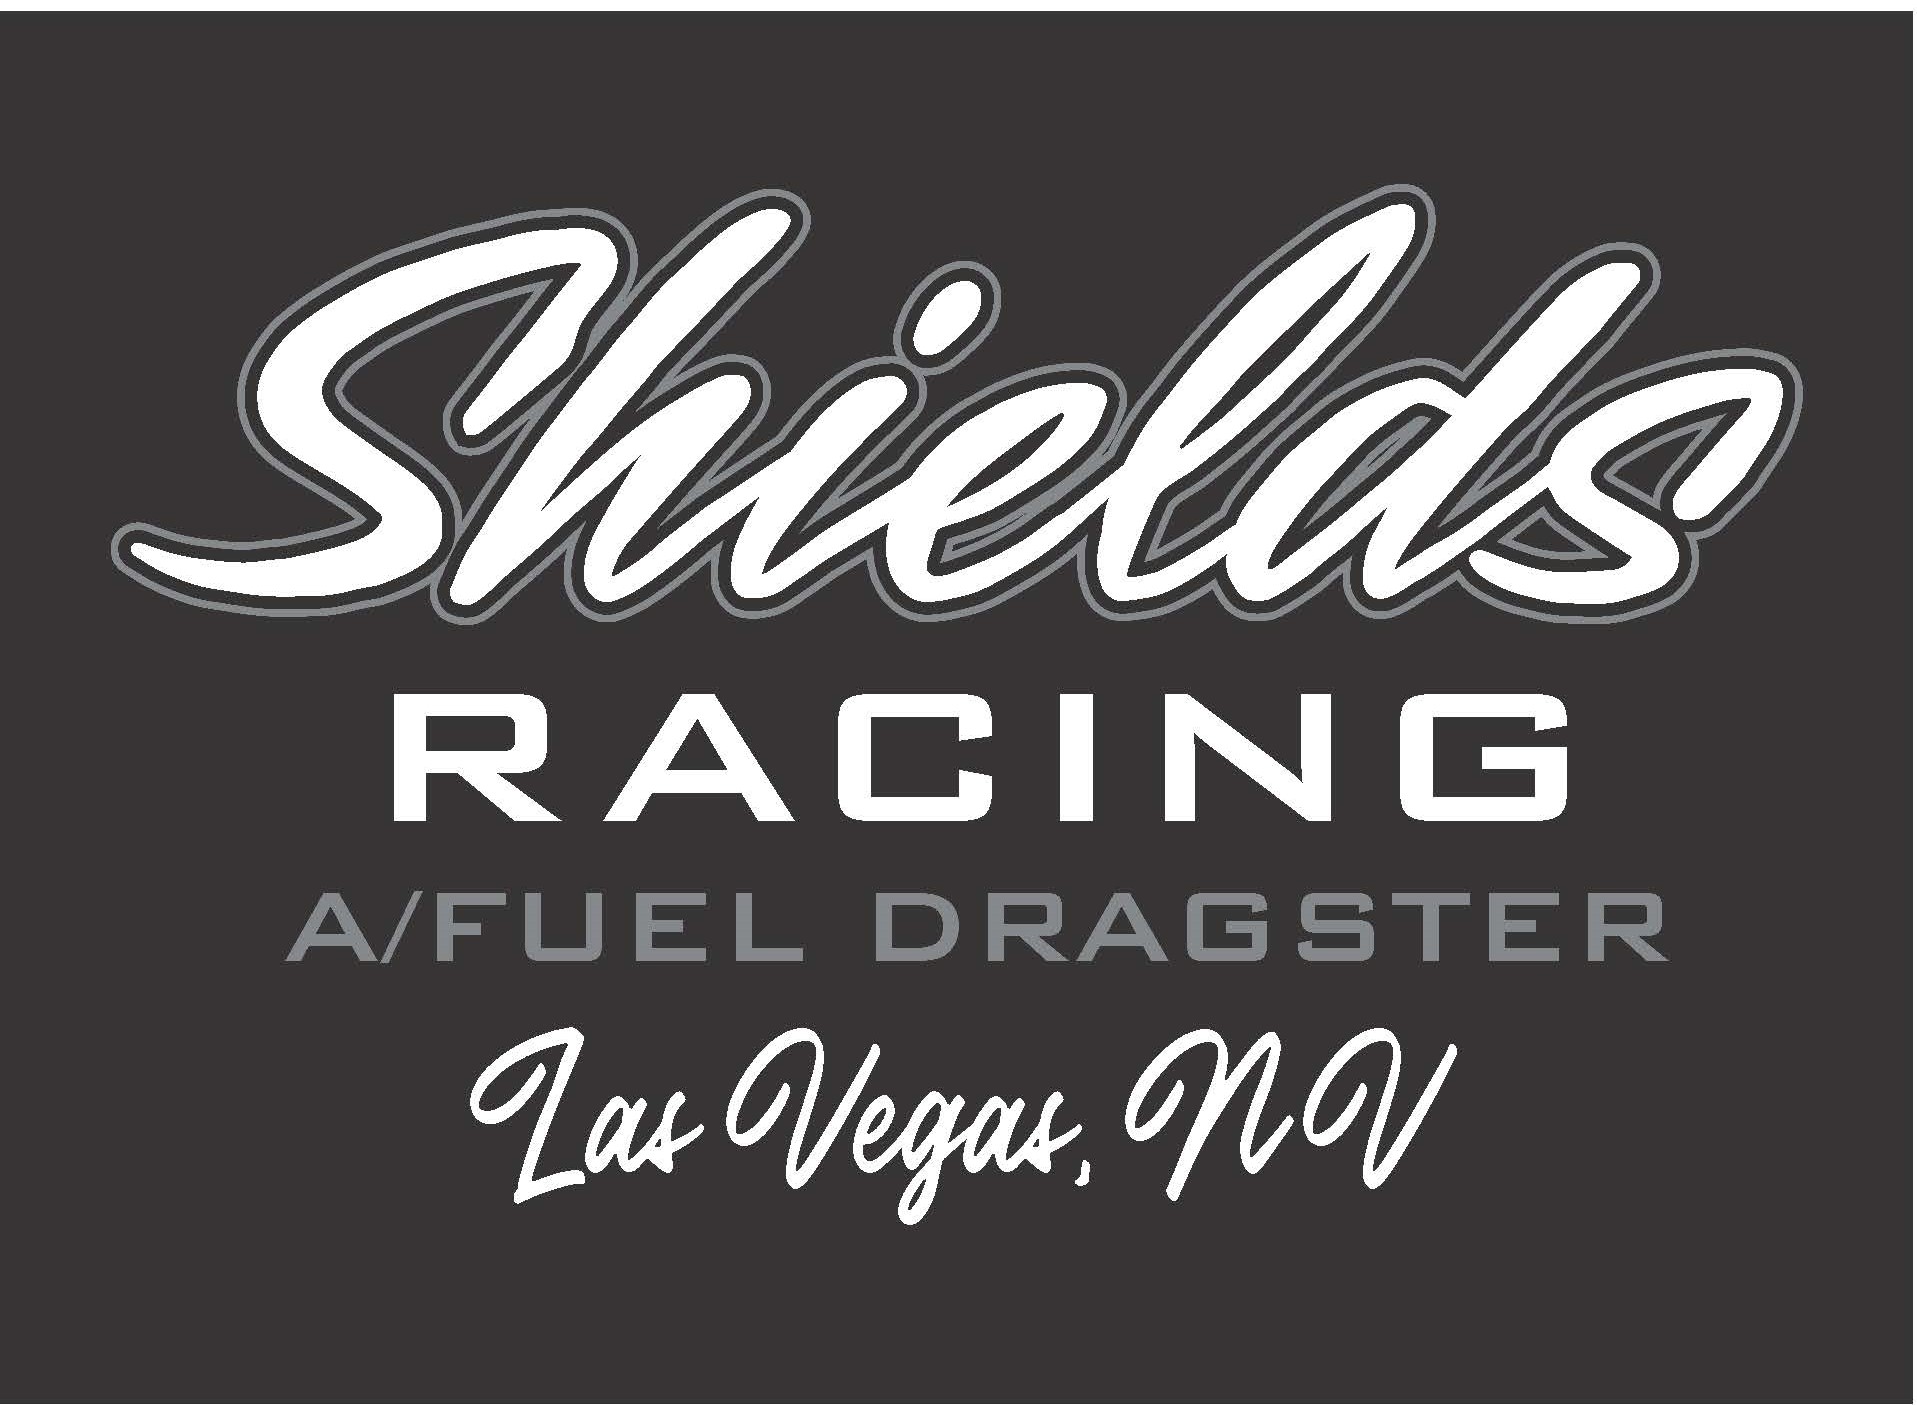 "Shields Racing Logo"